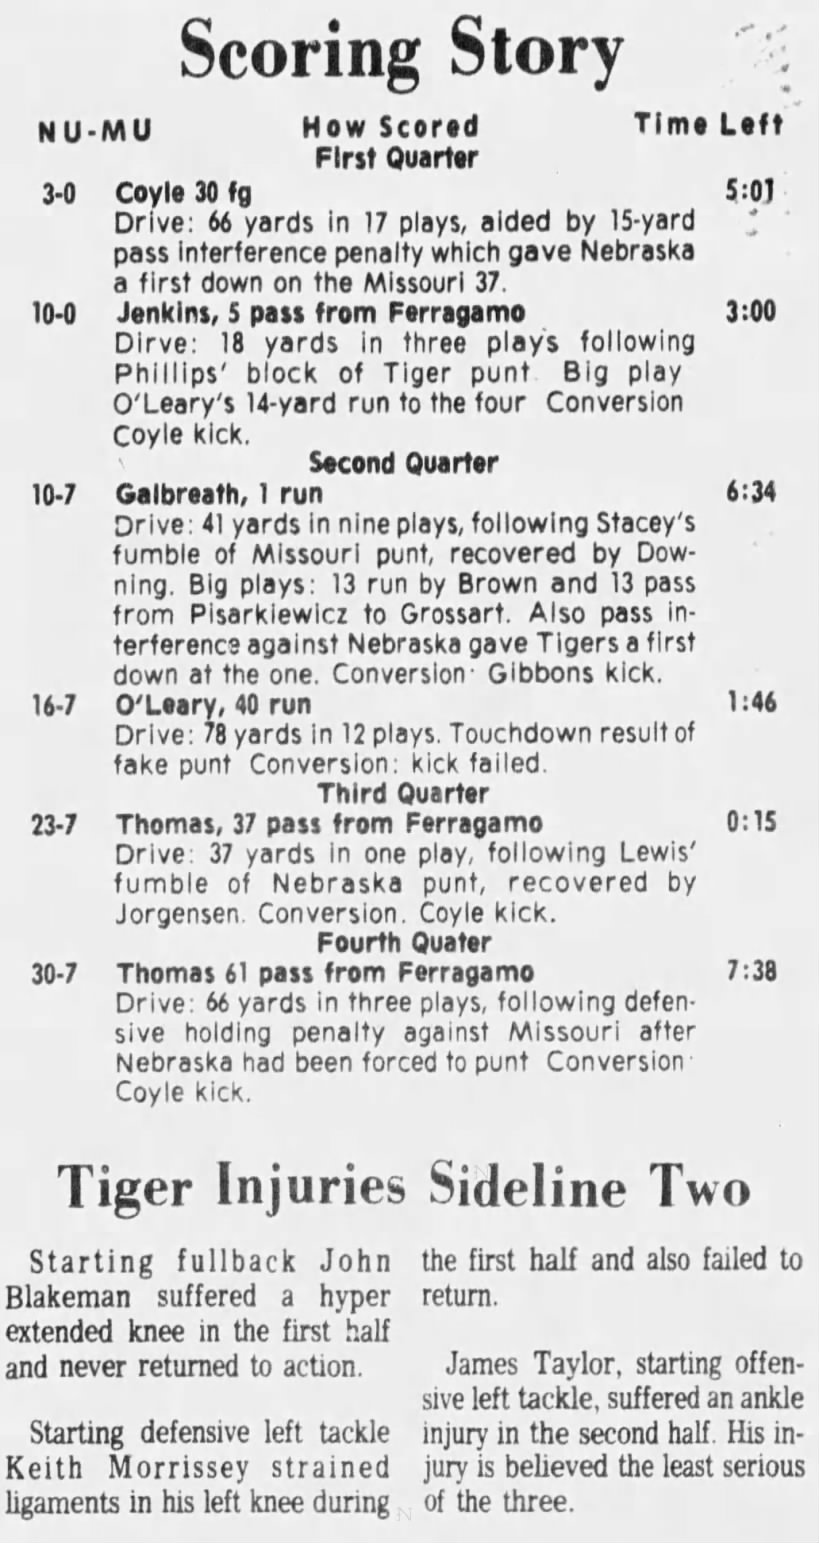 1975 Nebraska-Missouri scoring summary